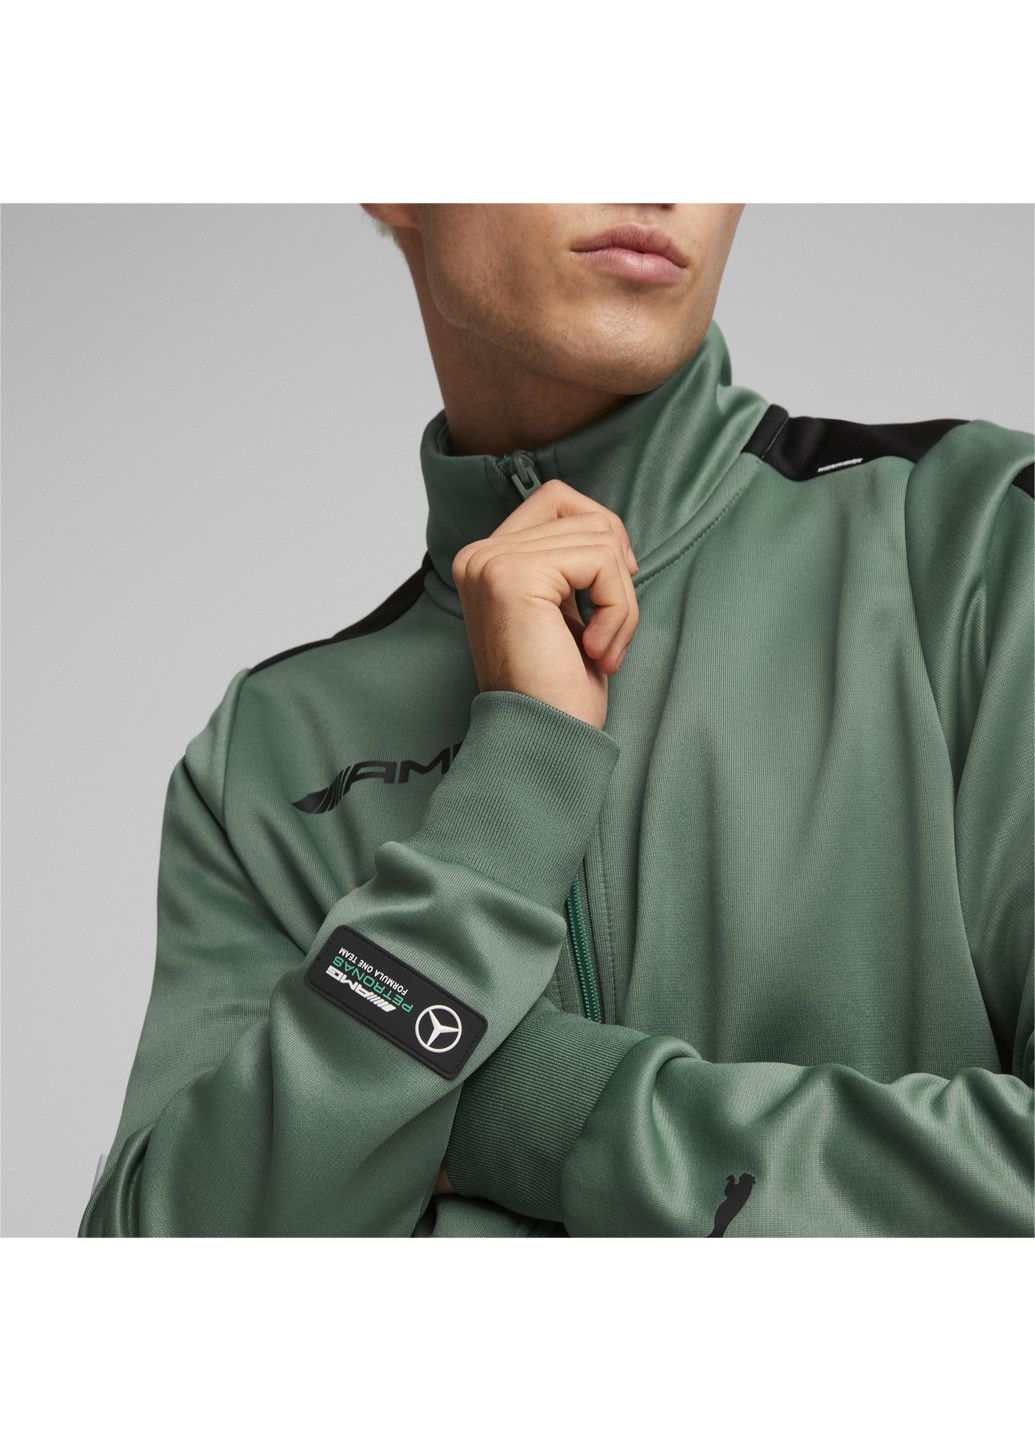 Куртка Mercedes-AMG Petronas Motorsport Formula One MT7 Track Jacket Men Puma однотонная зелёная спортивная хлопок, полиэстер, эластан